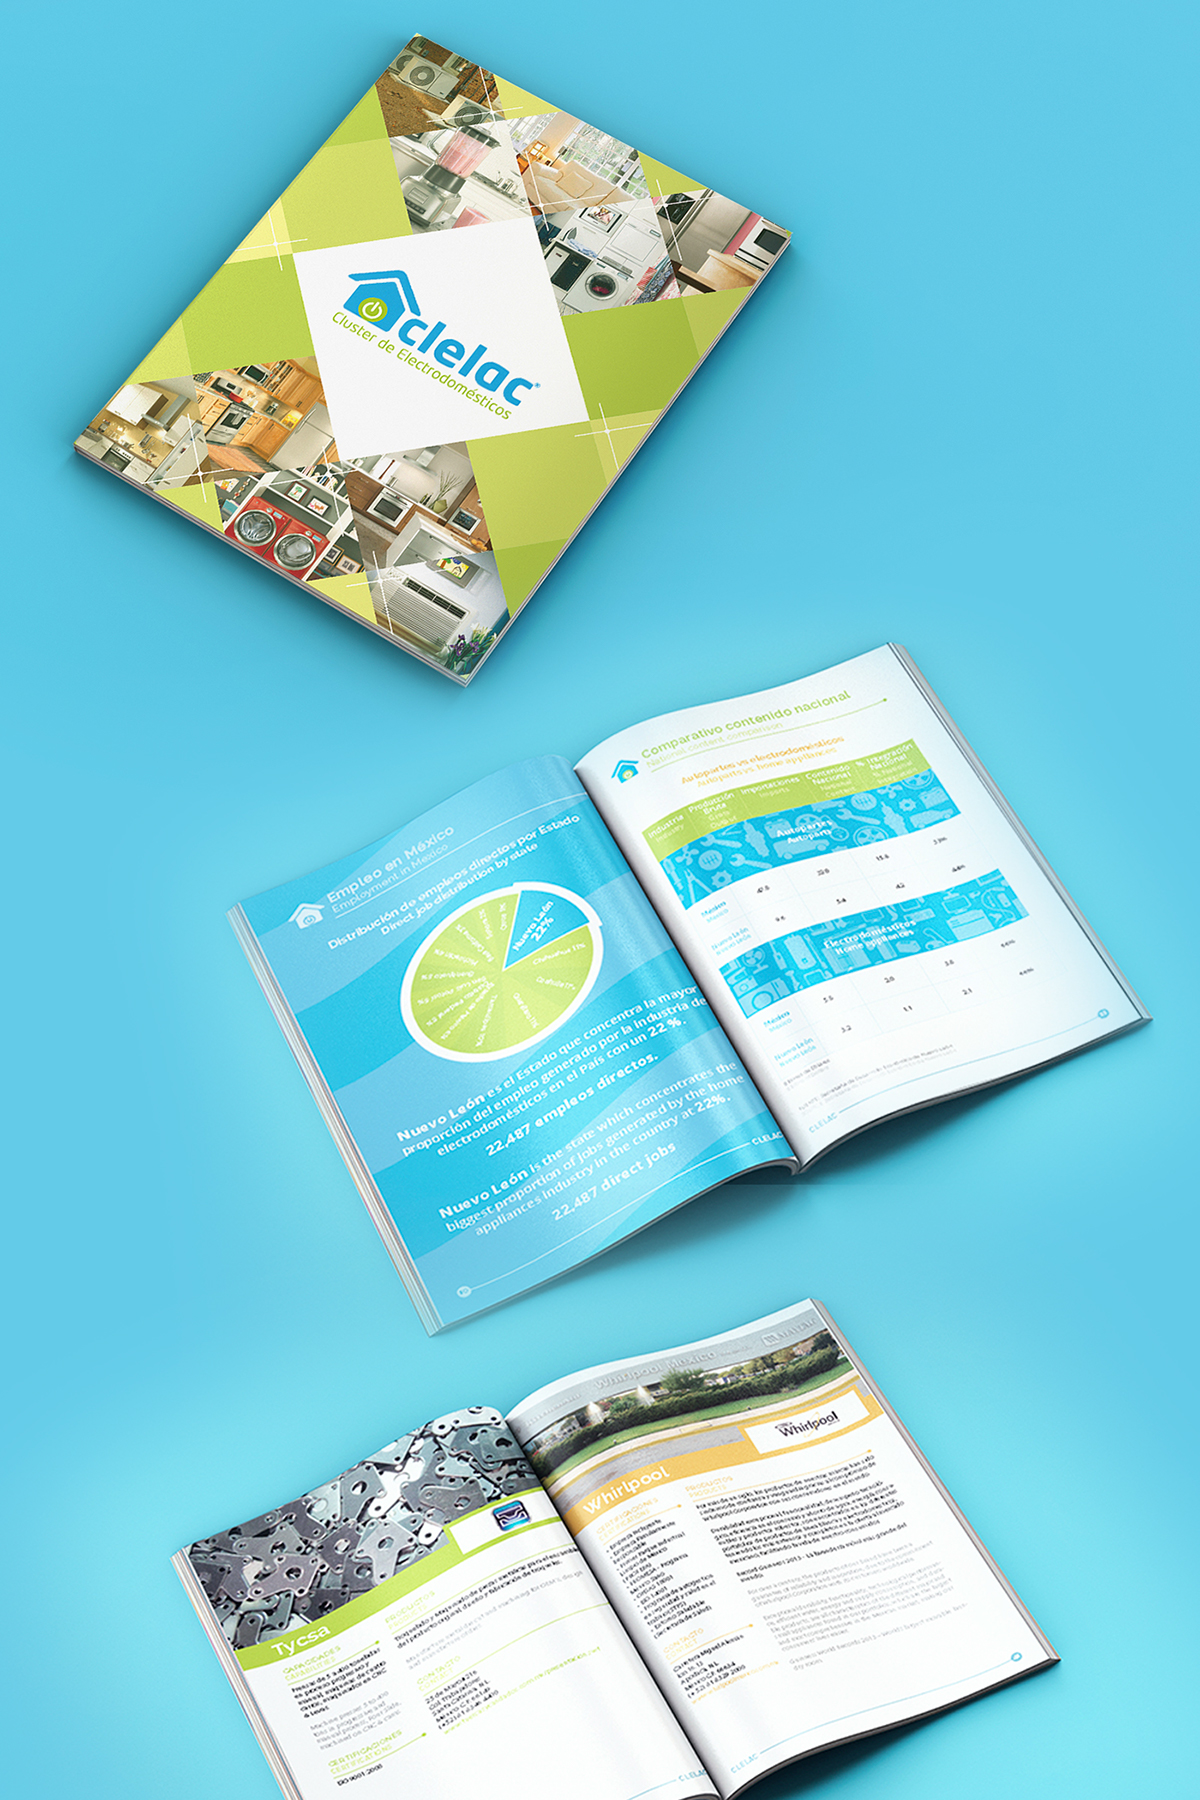 CLELAC Cluster de Electrodomésticos catalogo home appliances brochure